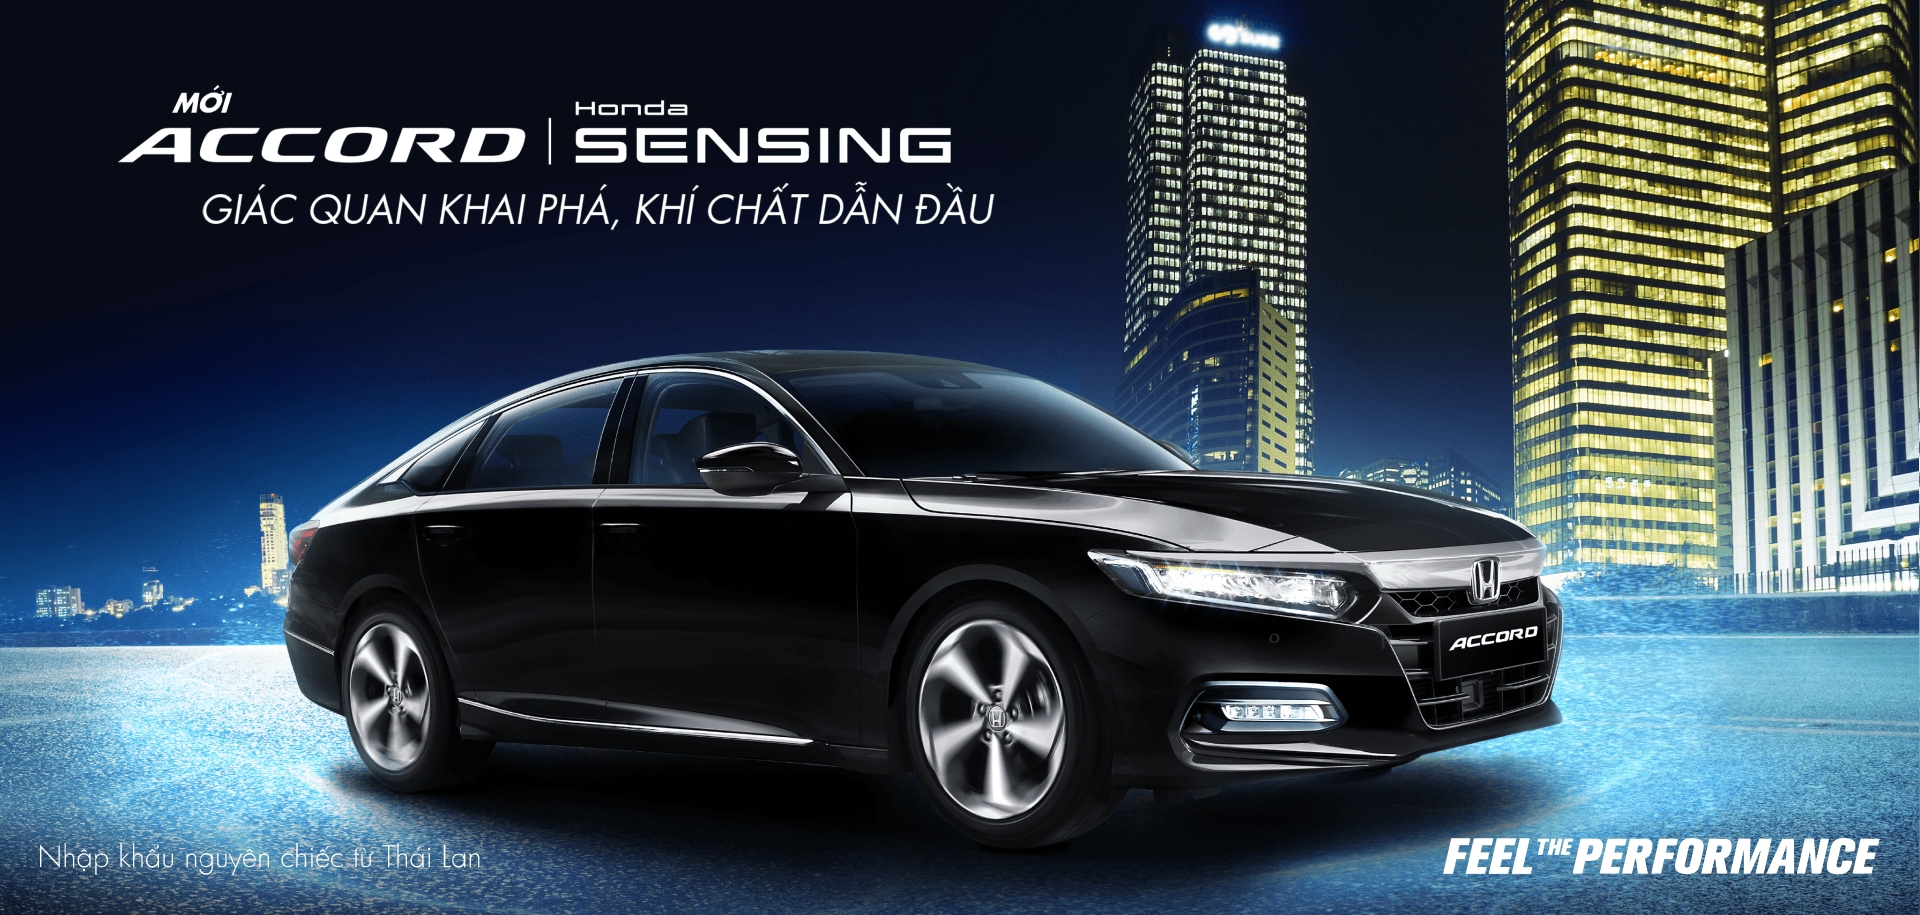 Honda Việt Nam giới thiệu phiên bản mới Honda Accord – Giác quan khai phá, khí chất dẫn đầu